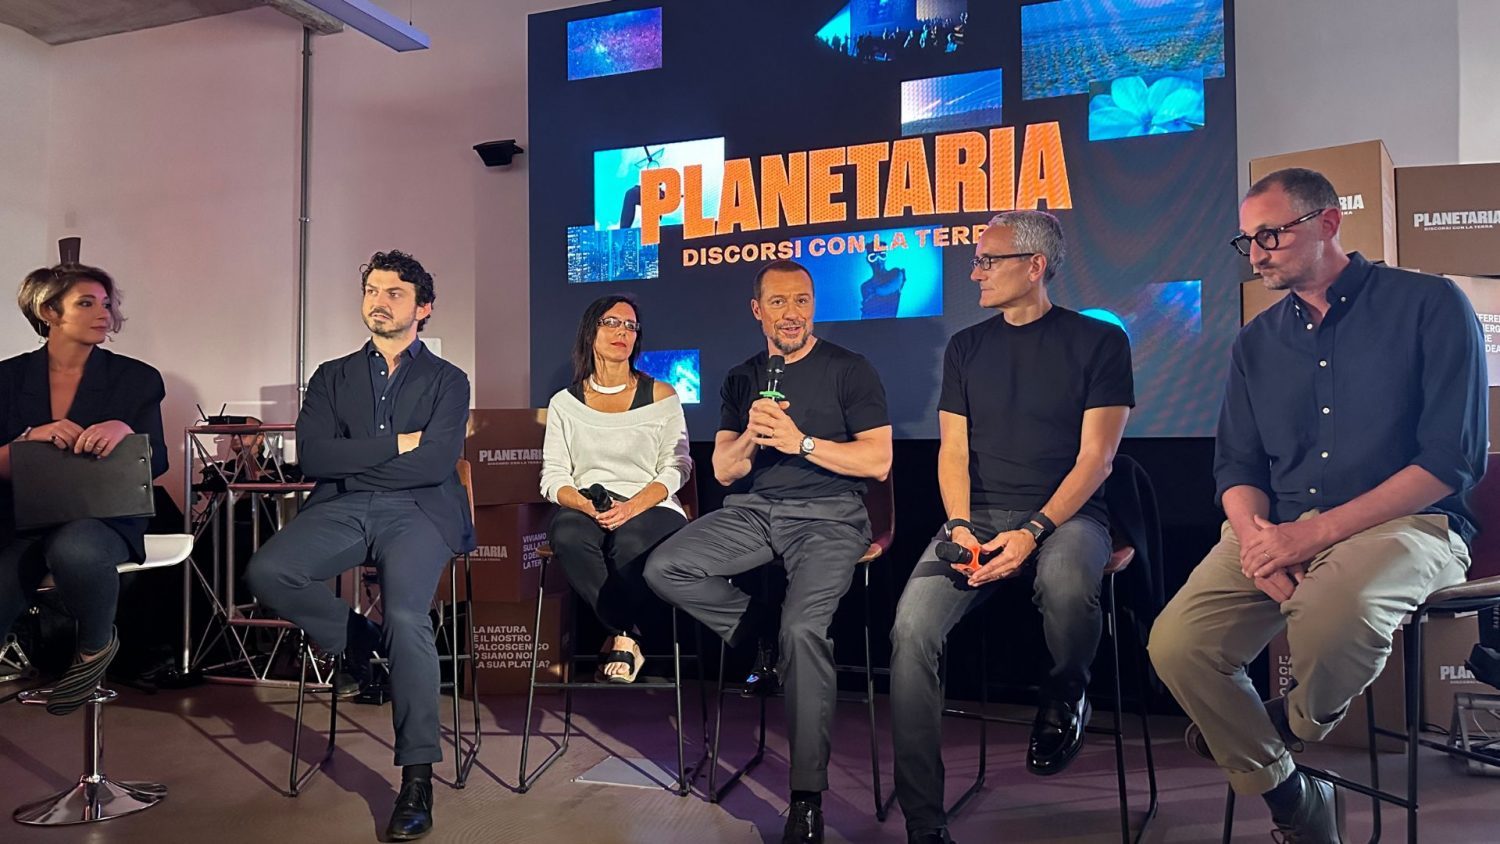 ‘Planetaria-discorsi con la terra’: il nuovo festival che ci connette con l’ambiente